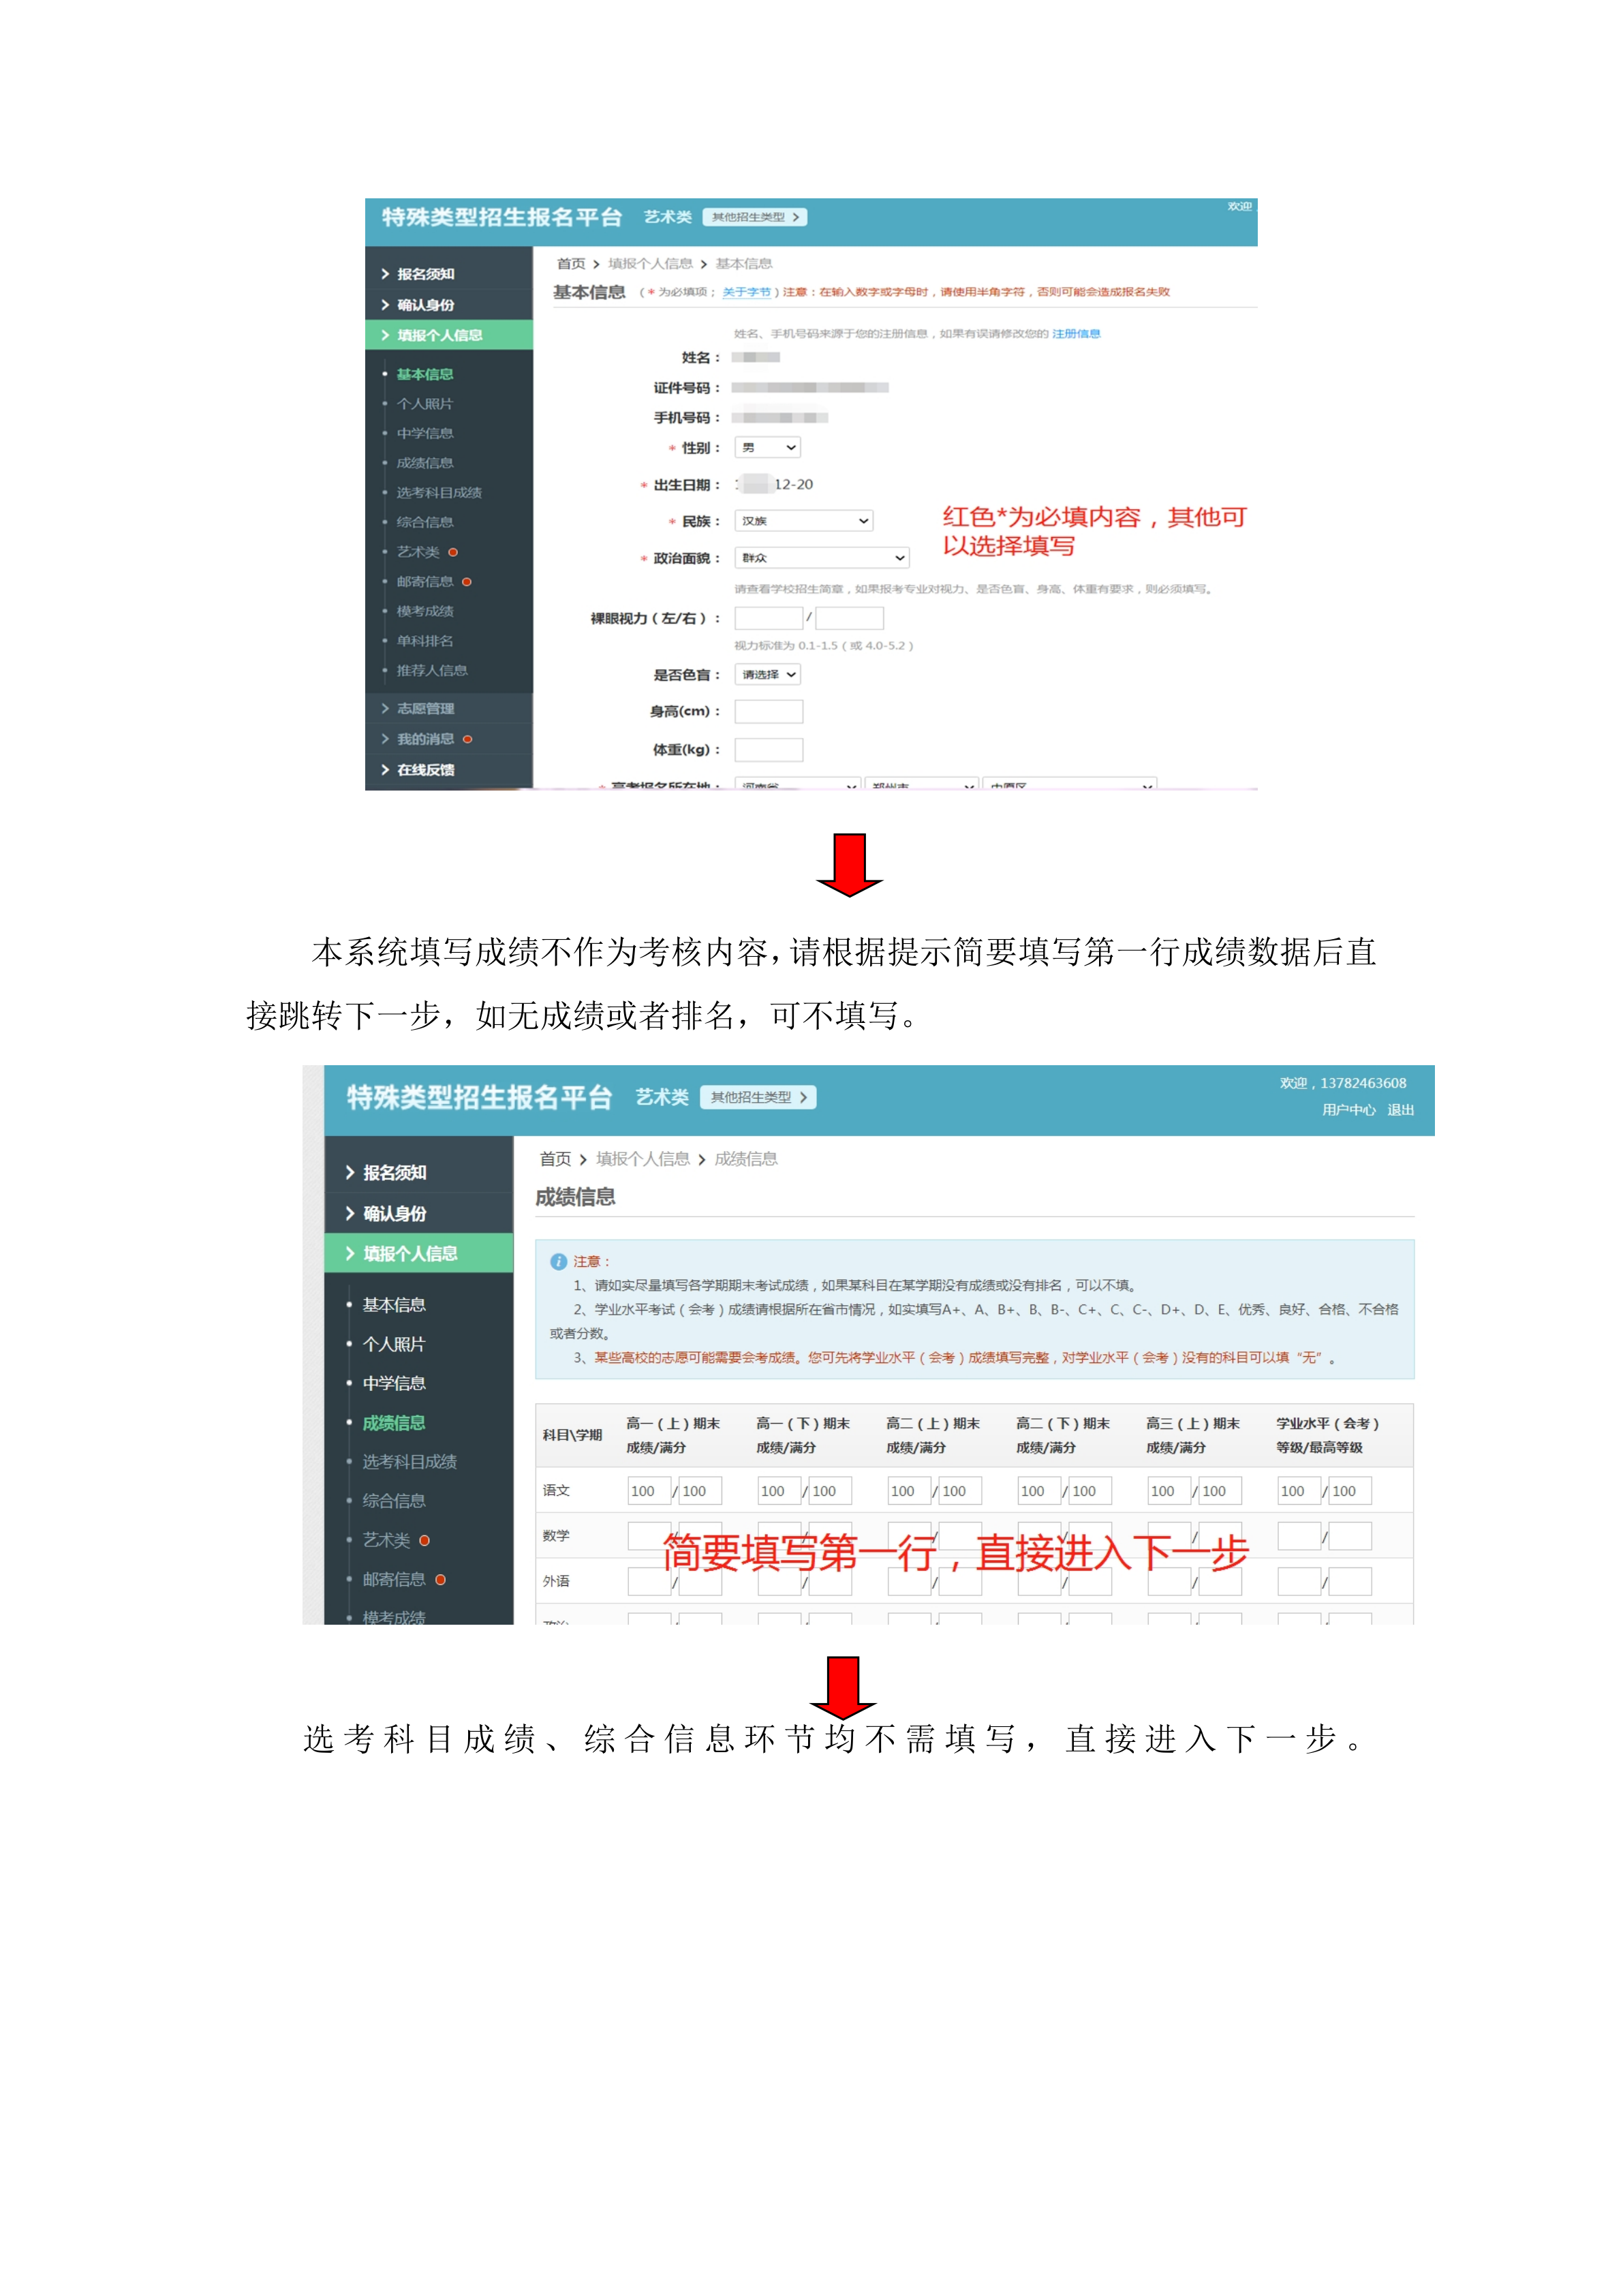 中原工学院表演专业网上报名流程(1)_4.png